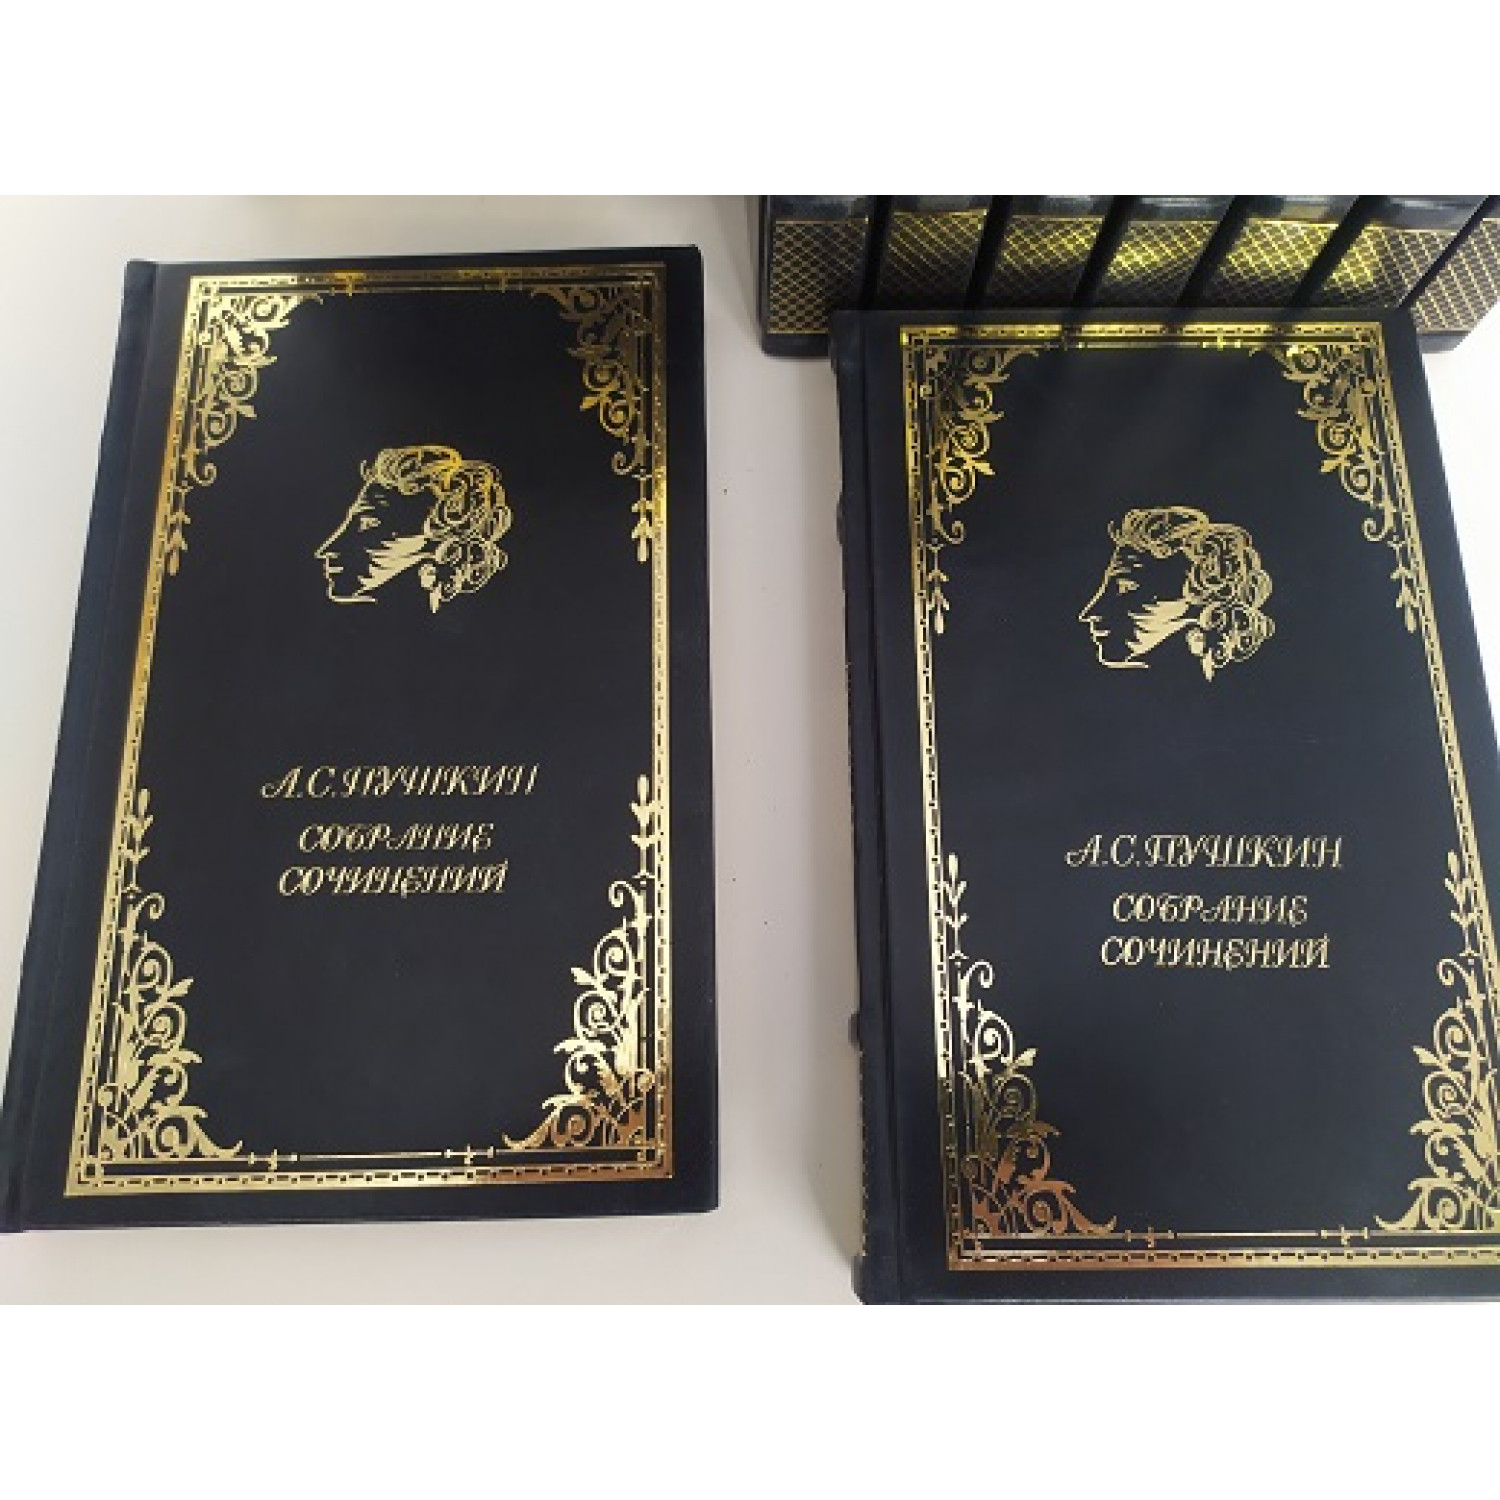 А. С. Пушкин. Полное собрание сочинений в 10 томах в кожаном переплете ручной работы